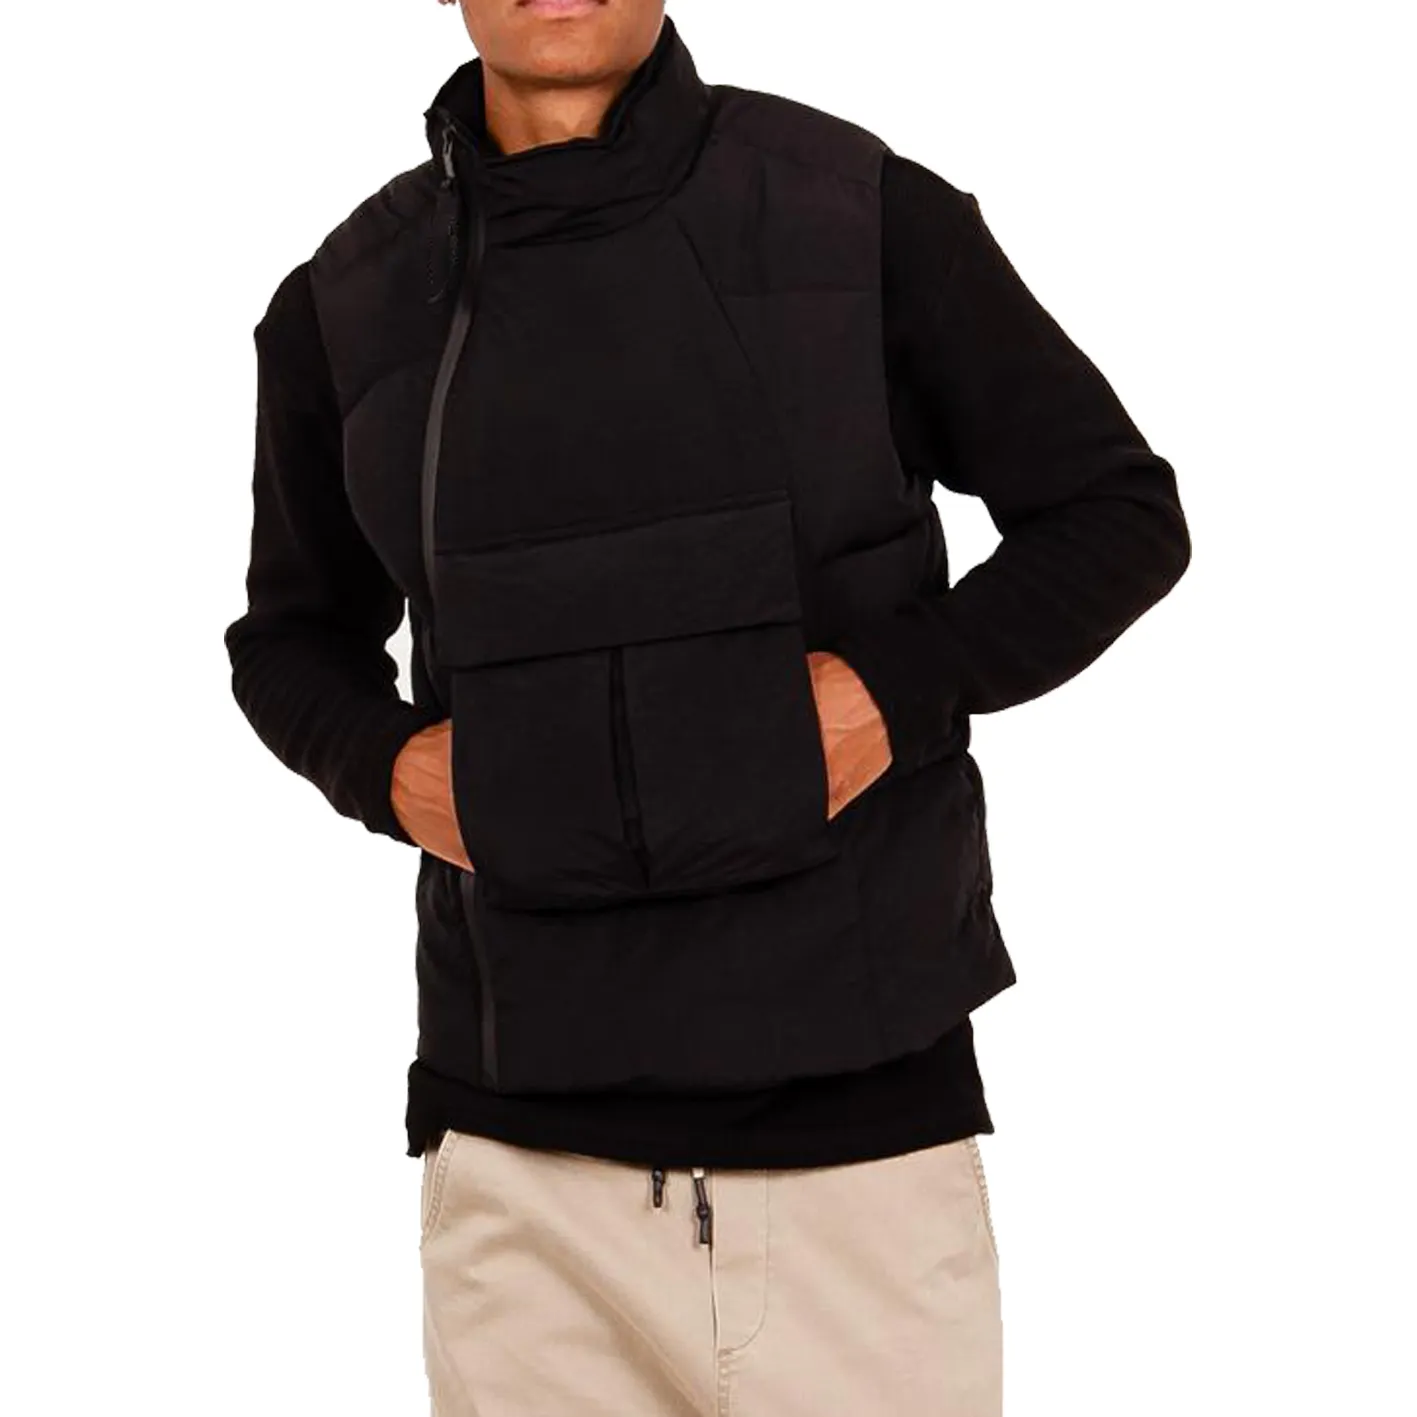 Manteau rembourré en coton, veste tactique sans manches, à col haut, noir, avec grande poche frontale, pour l'hiver, offre spéciale